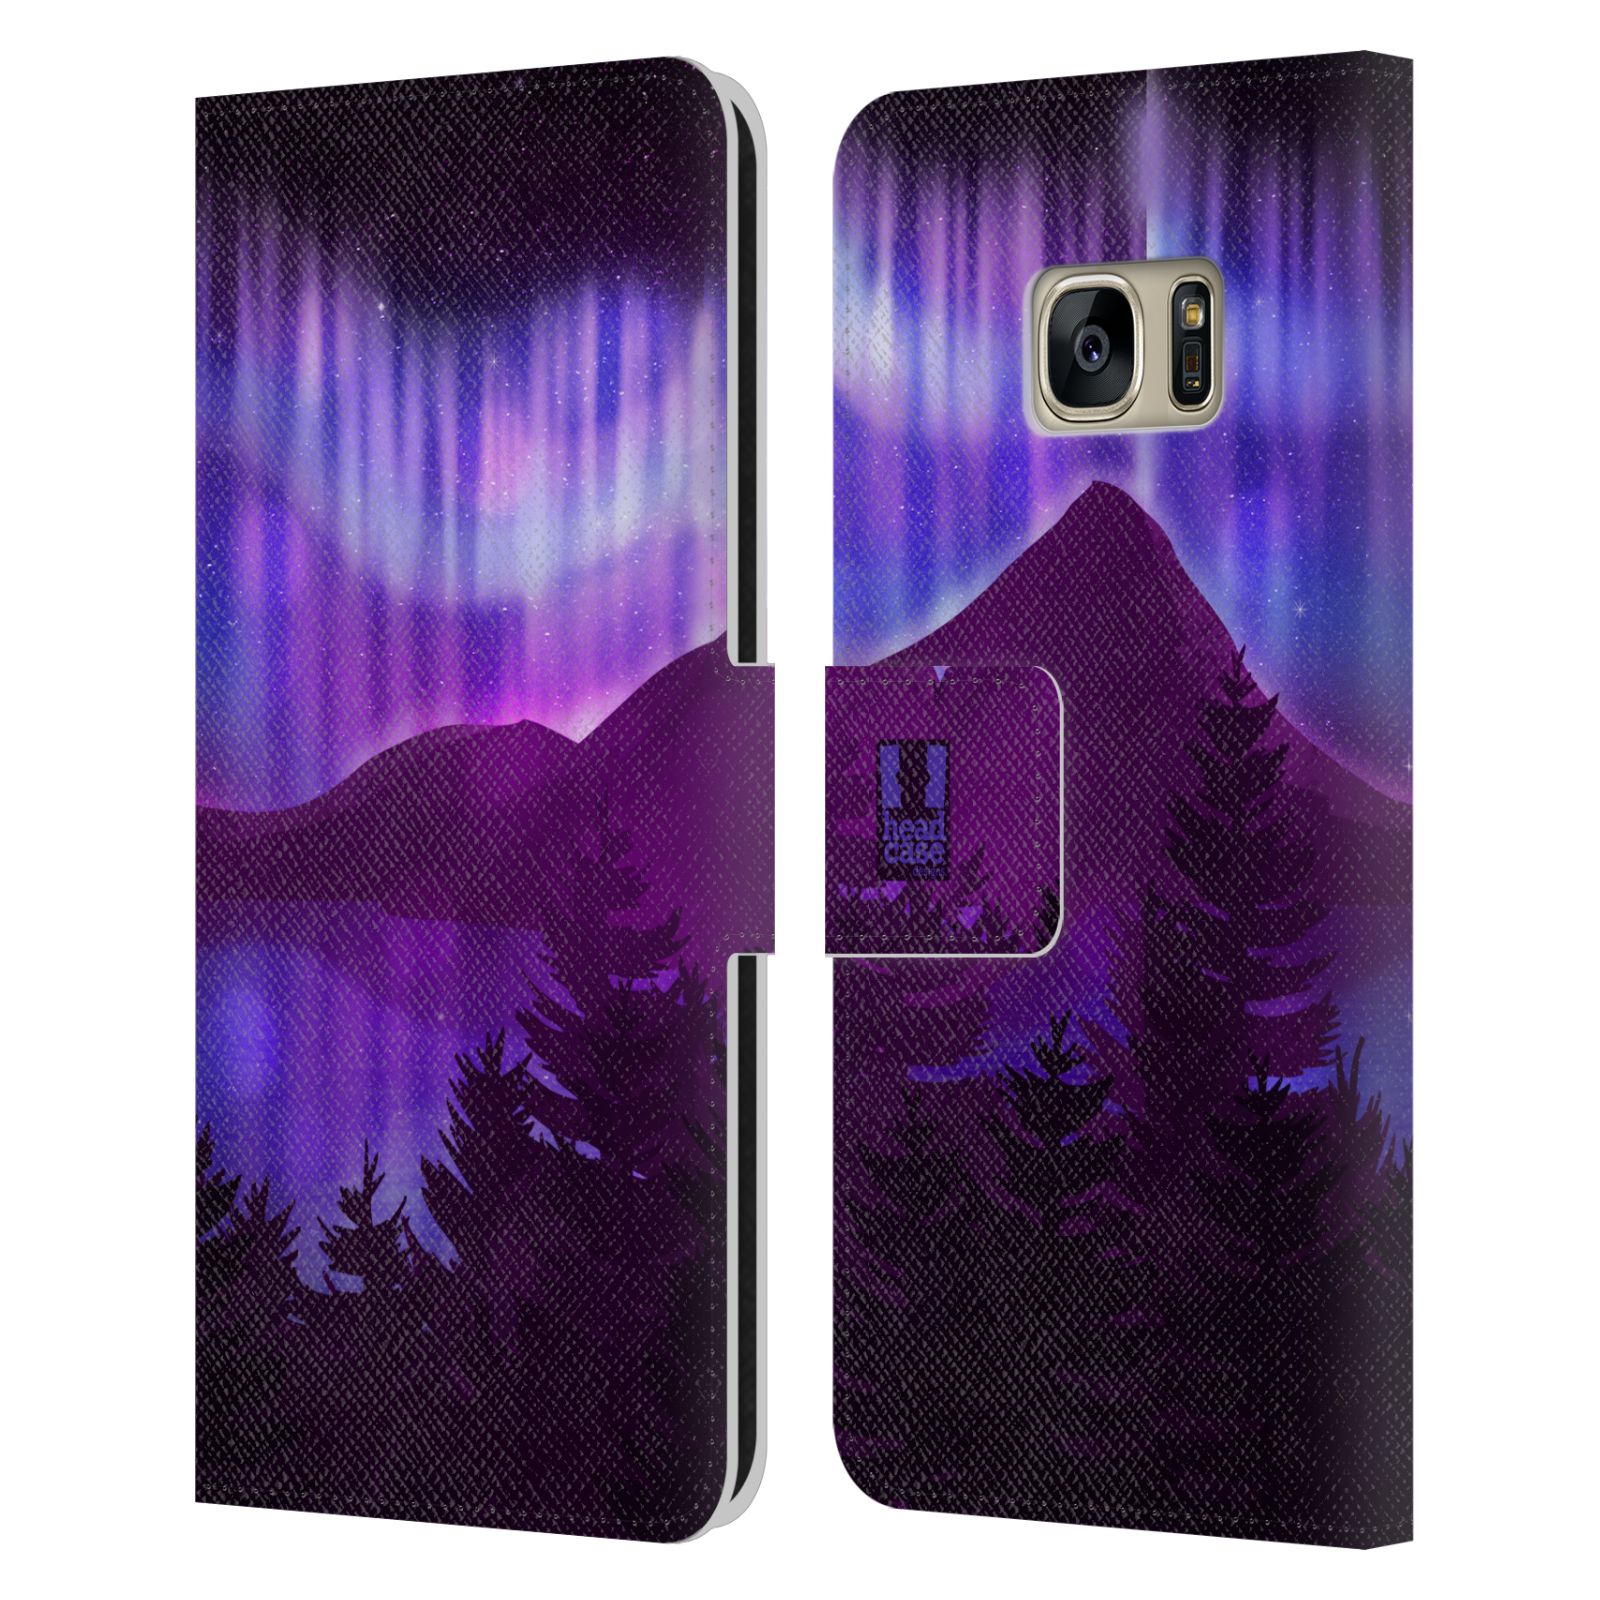 Pouzdro na mobil Samsung Galaxy S7 - HEAD CASE - Hory a lesy fialový odstín